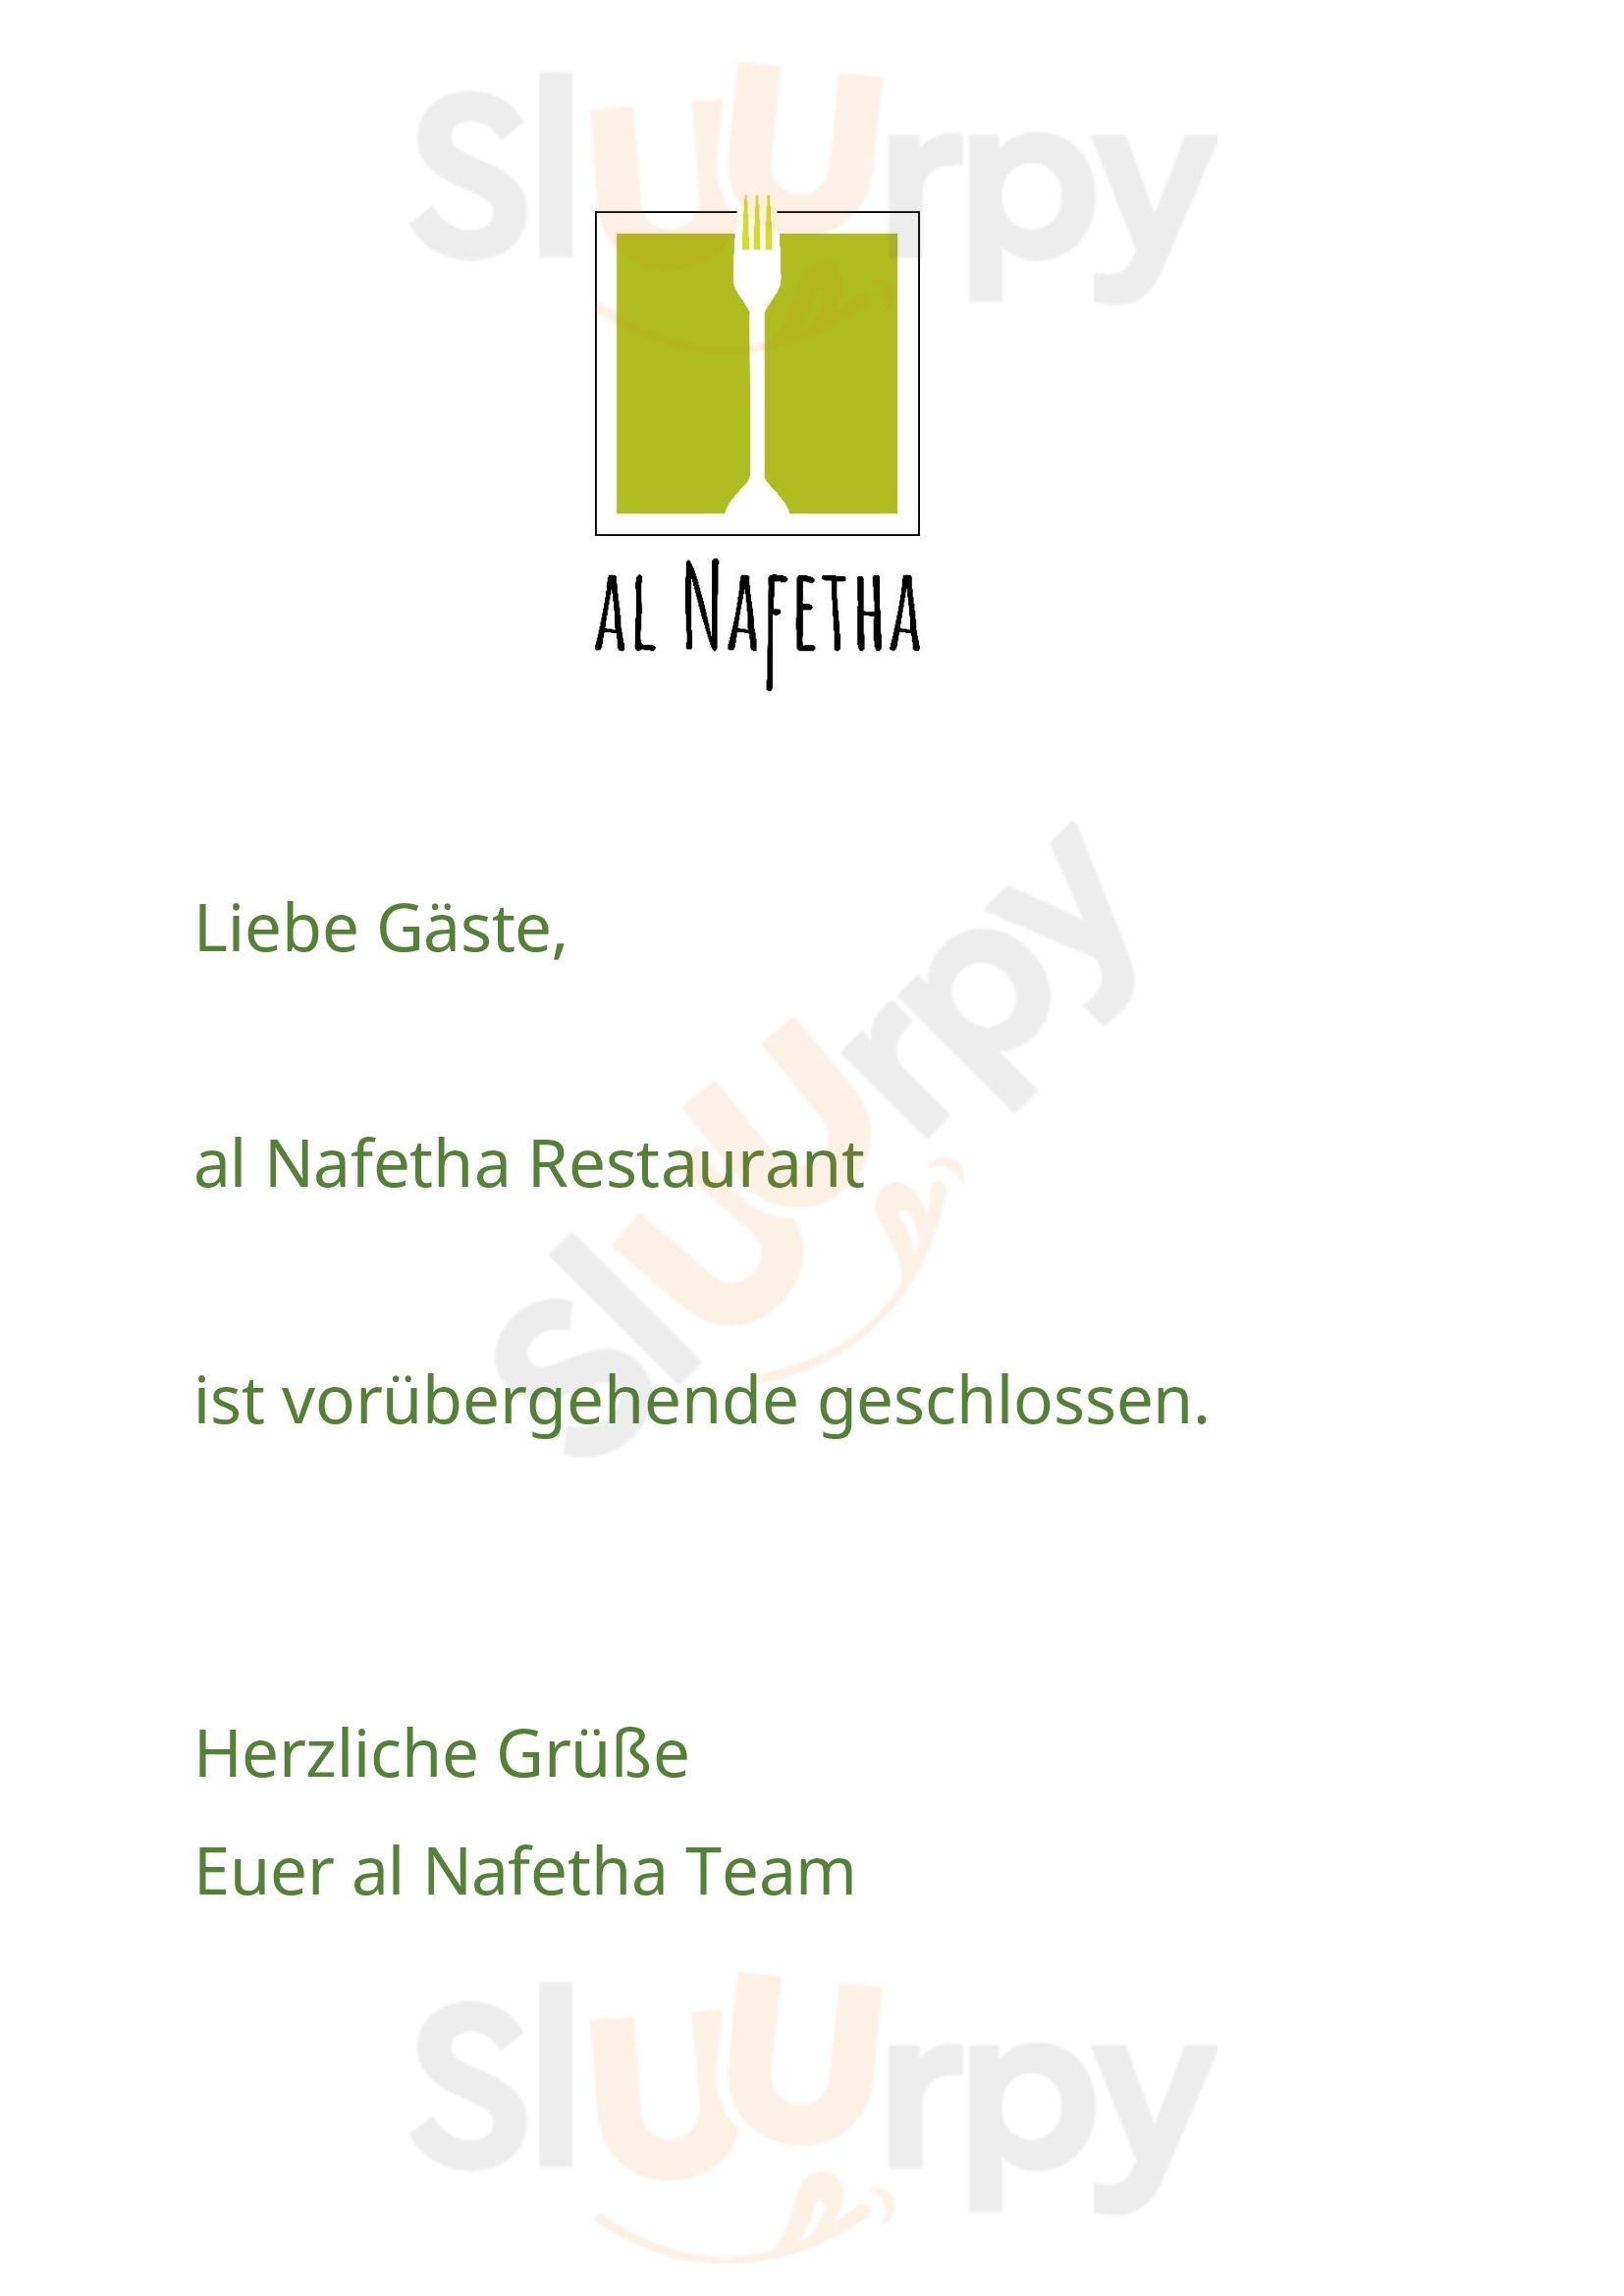 Al Nafetha Café / Restaurant Berlin Menu - 1